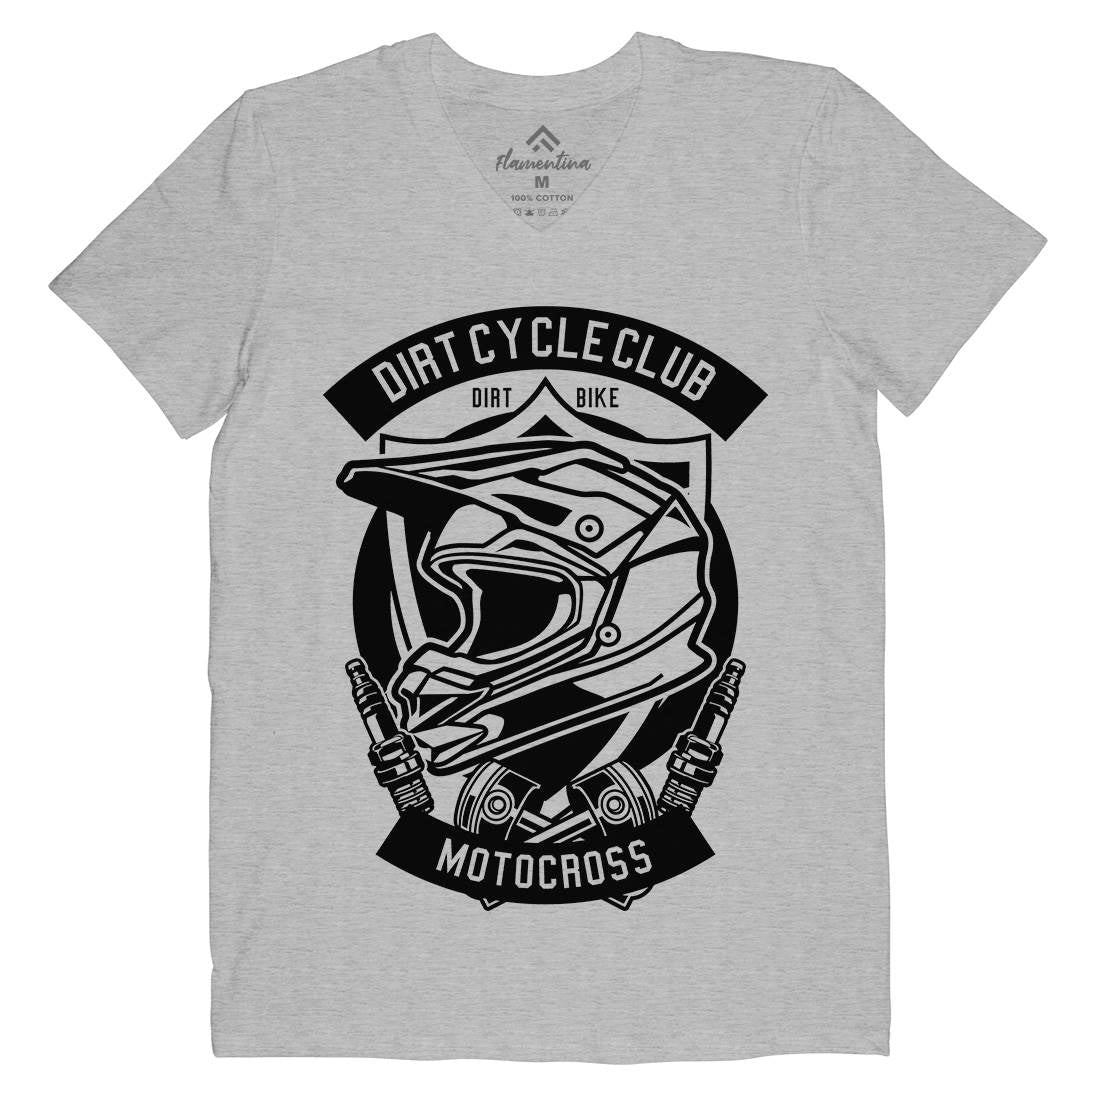 Dirty Cycle Club Mens V-Neck T-Shirt Motorcycles B532